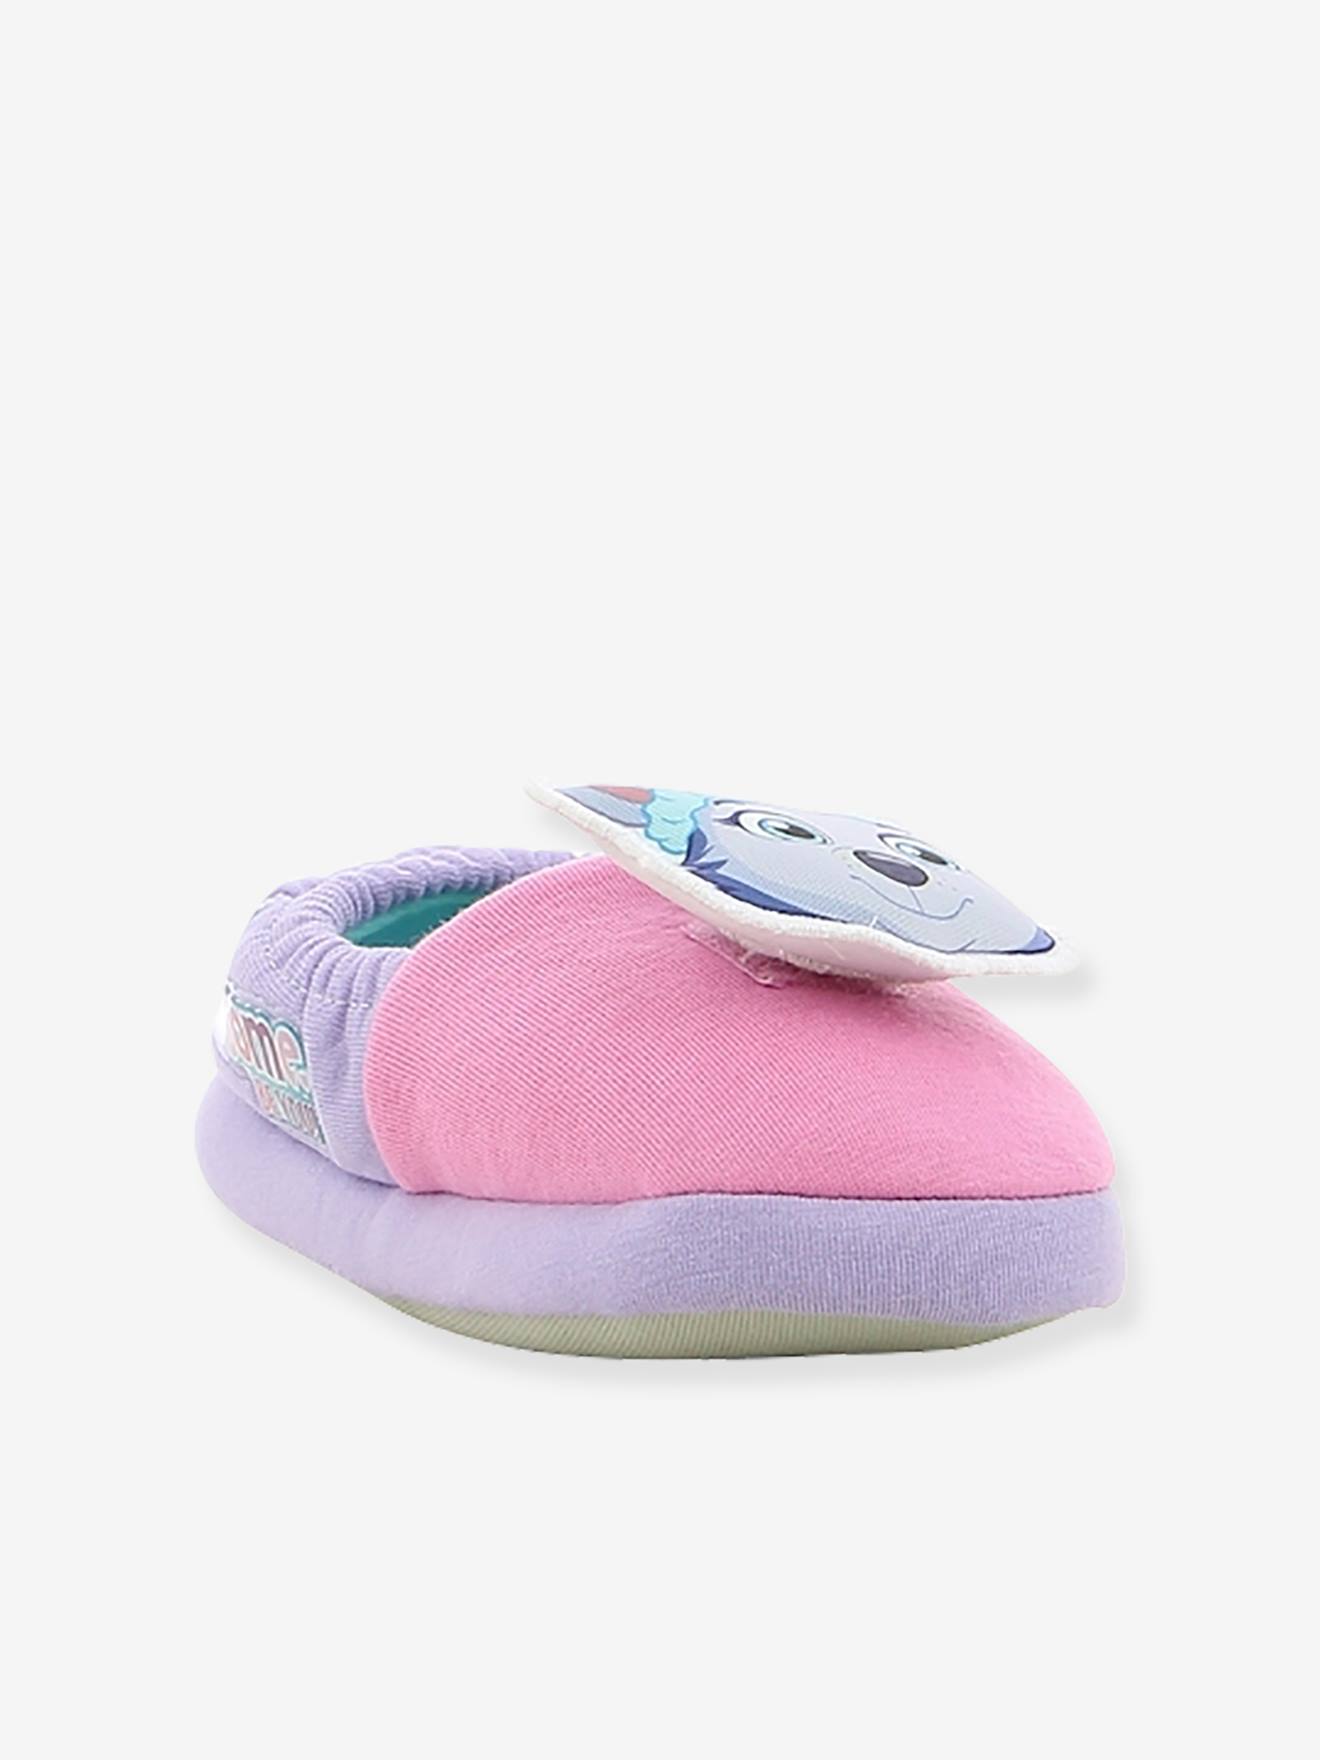 slipper design for girls